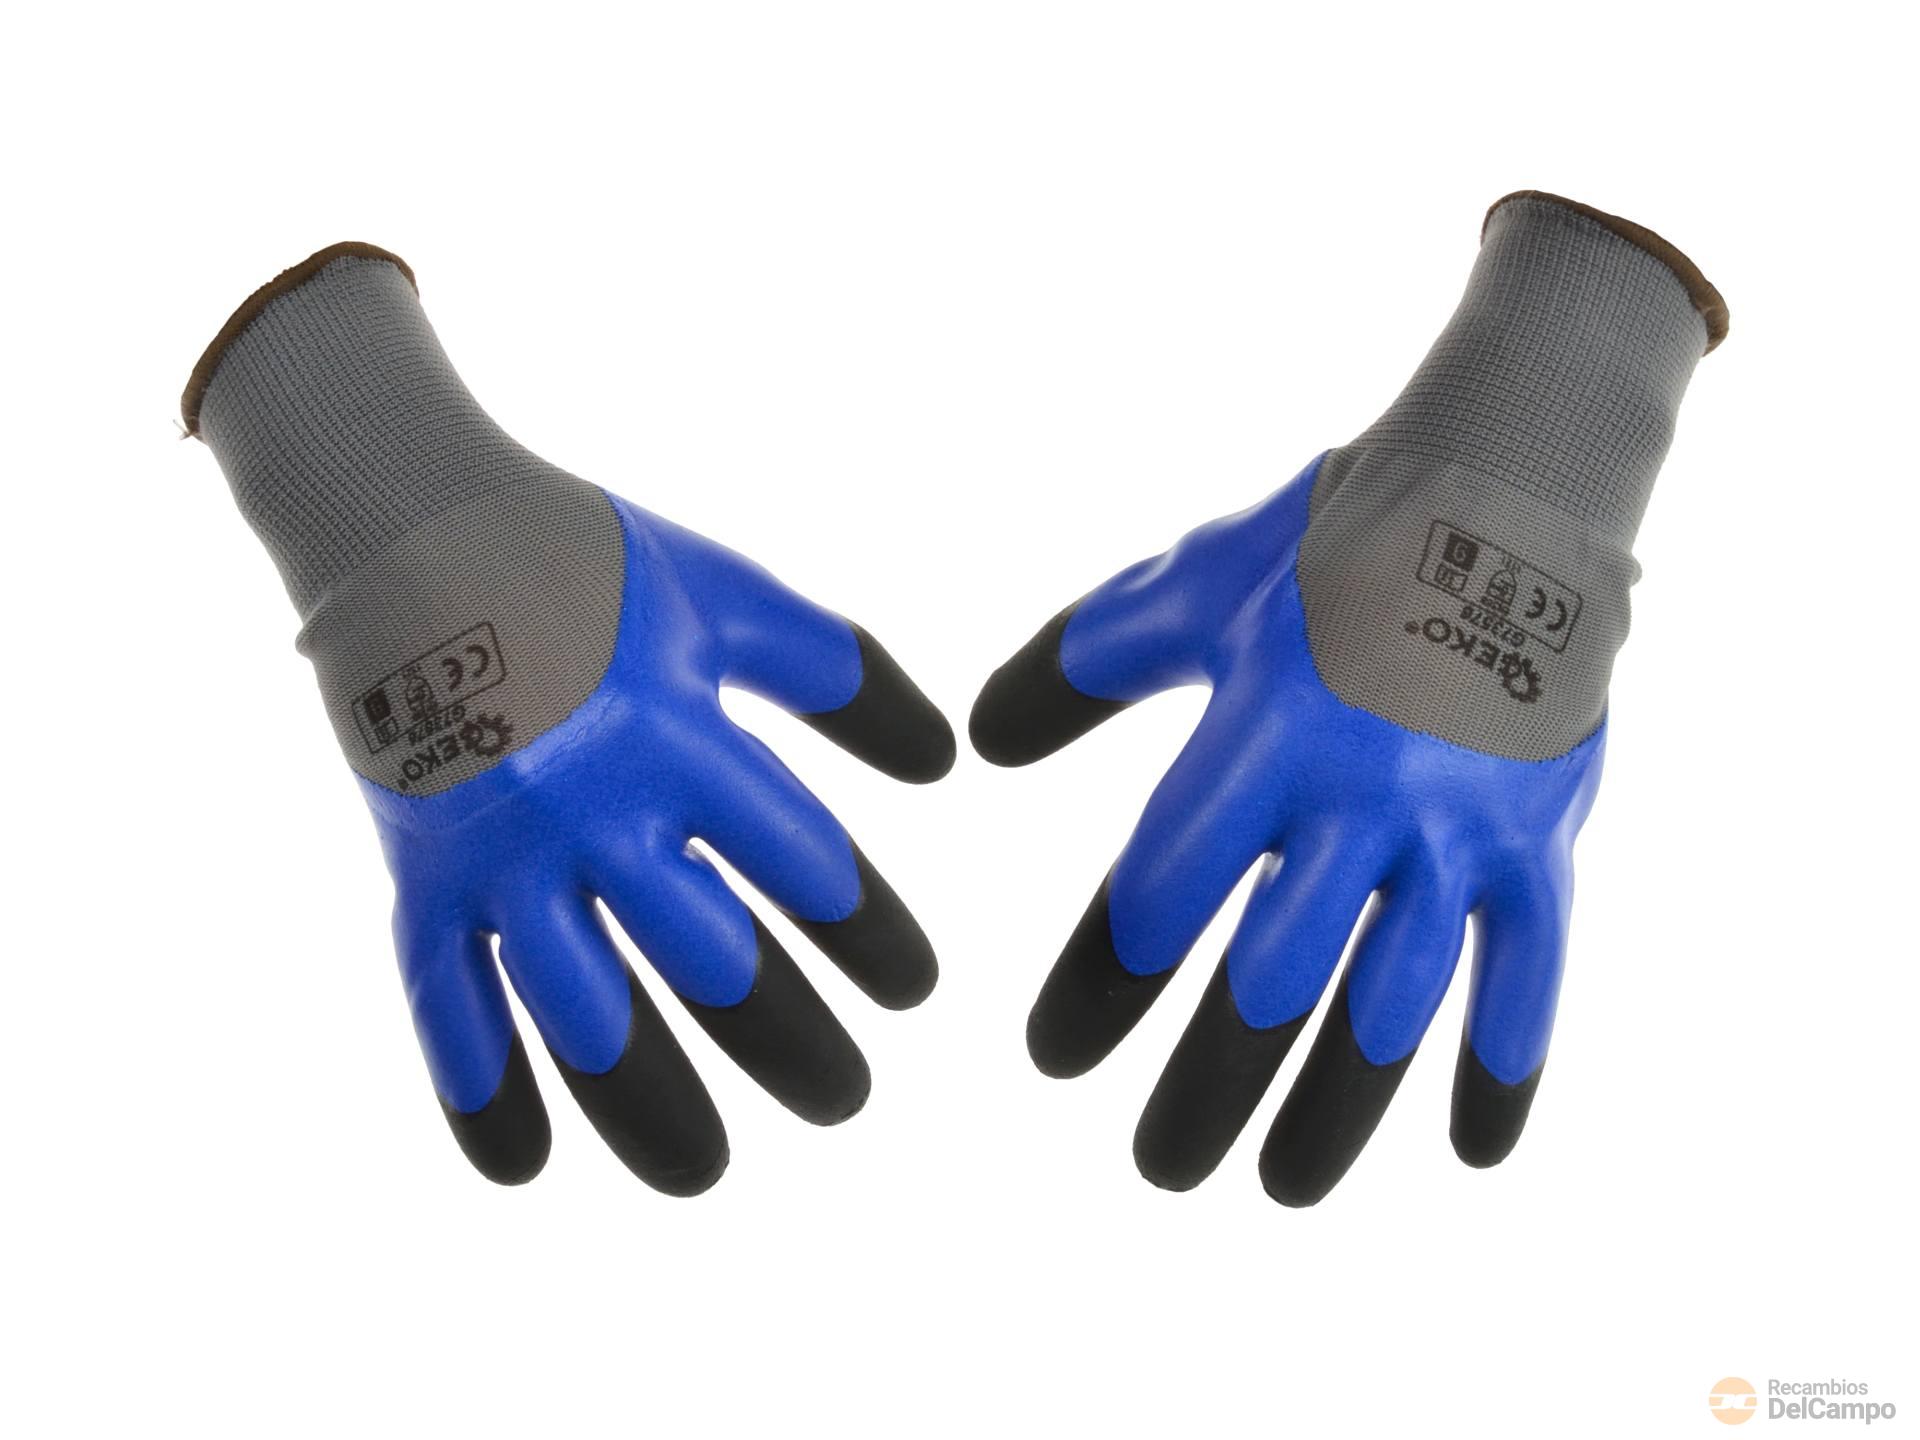 Paquete 12 pares de guantes poliester azul recubierto de latex negro, talla 10 resistentes a la abrasión y perforacion